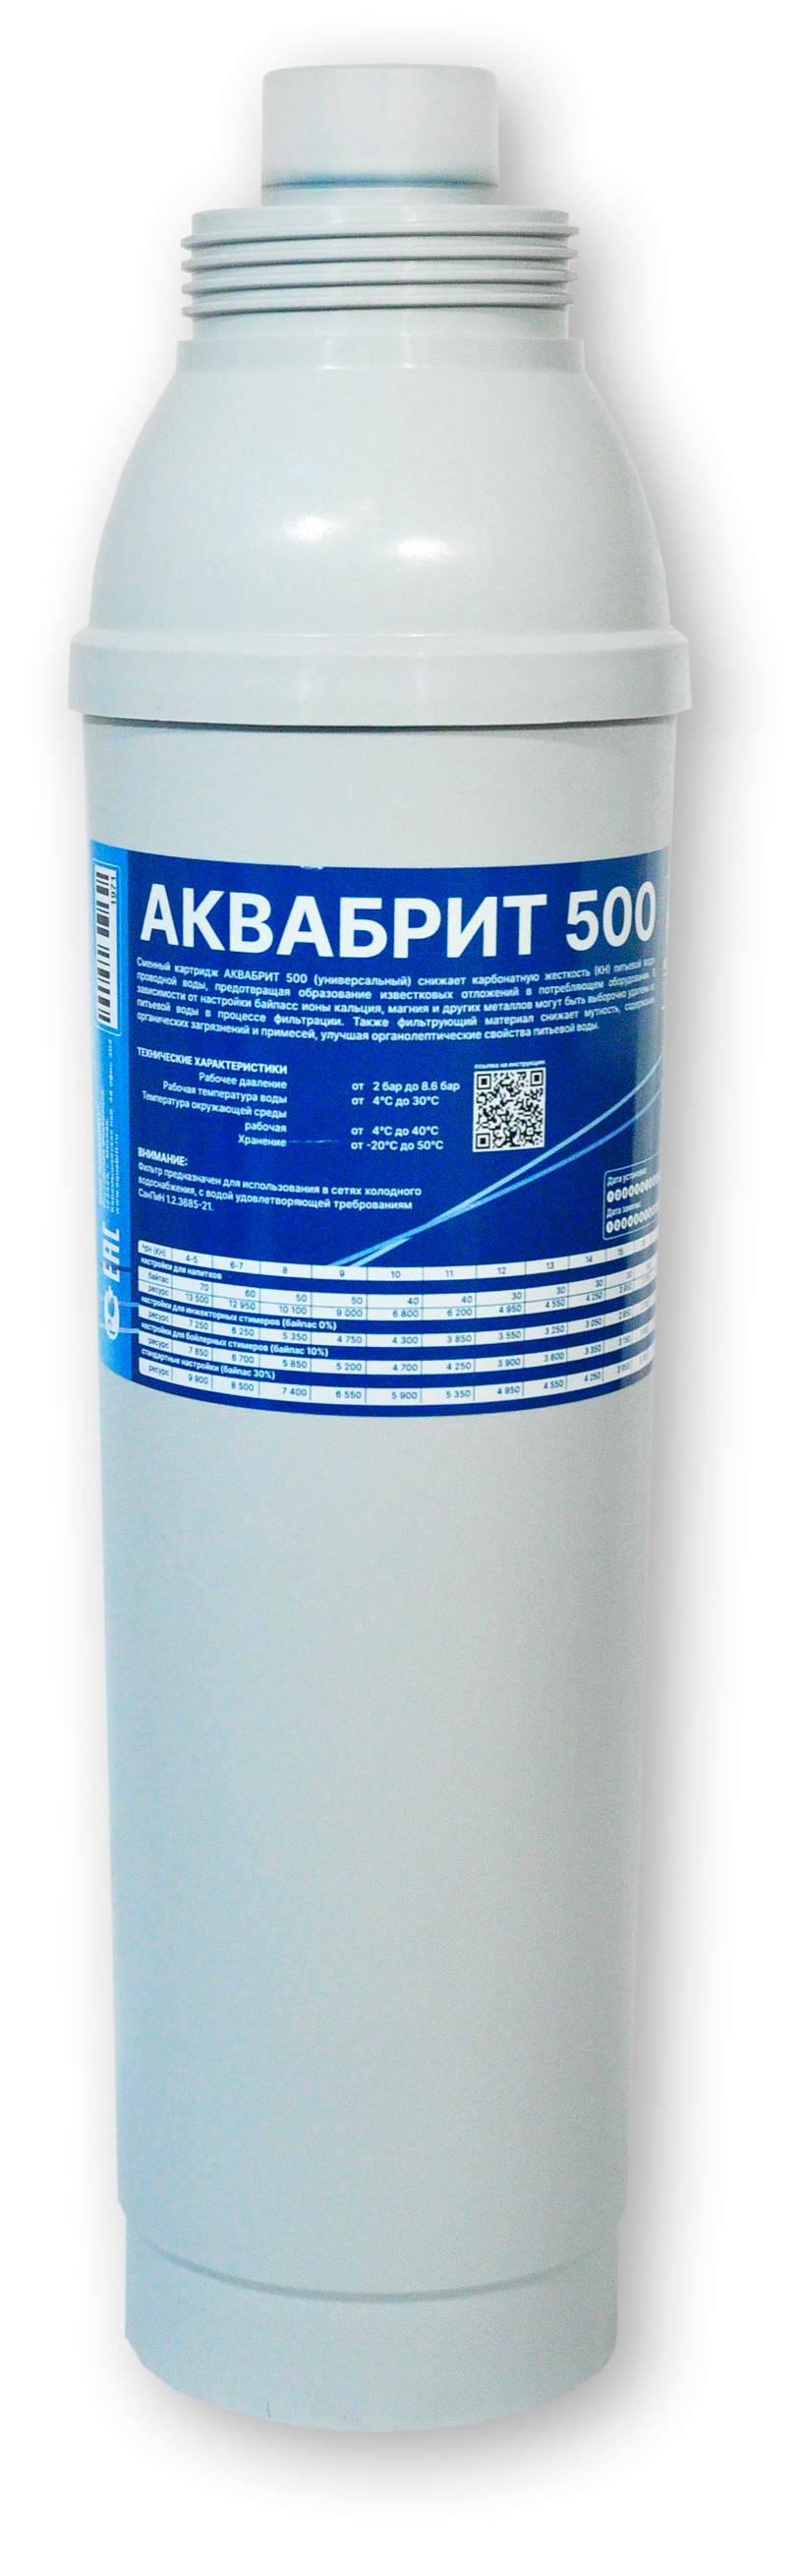 АБ-500